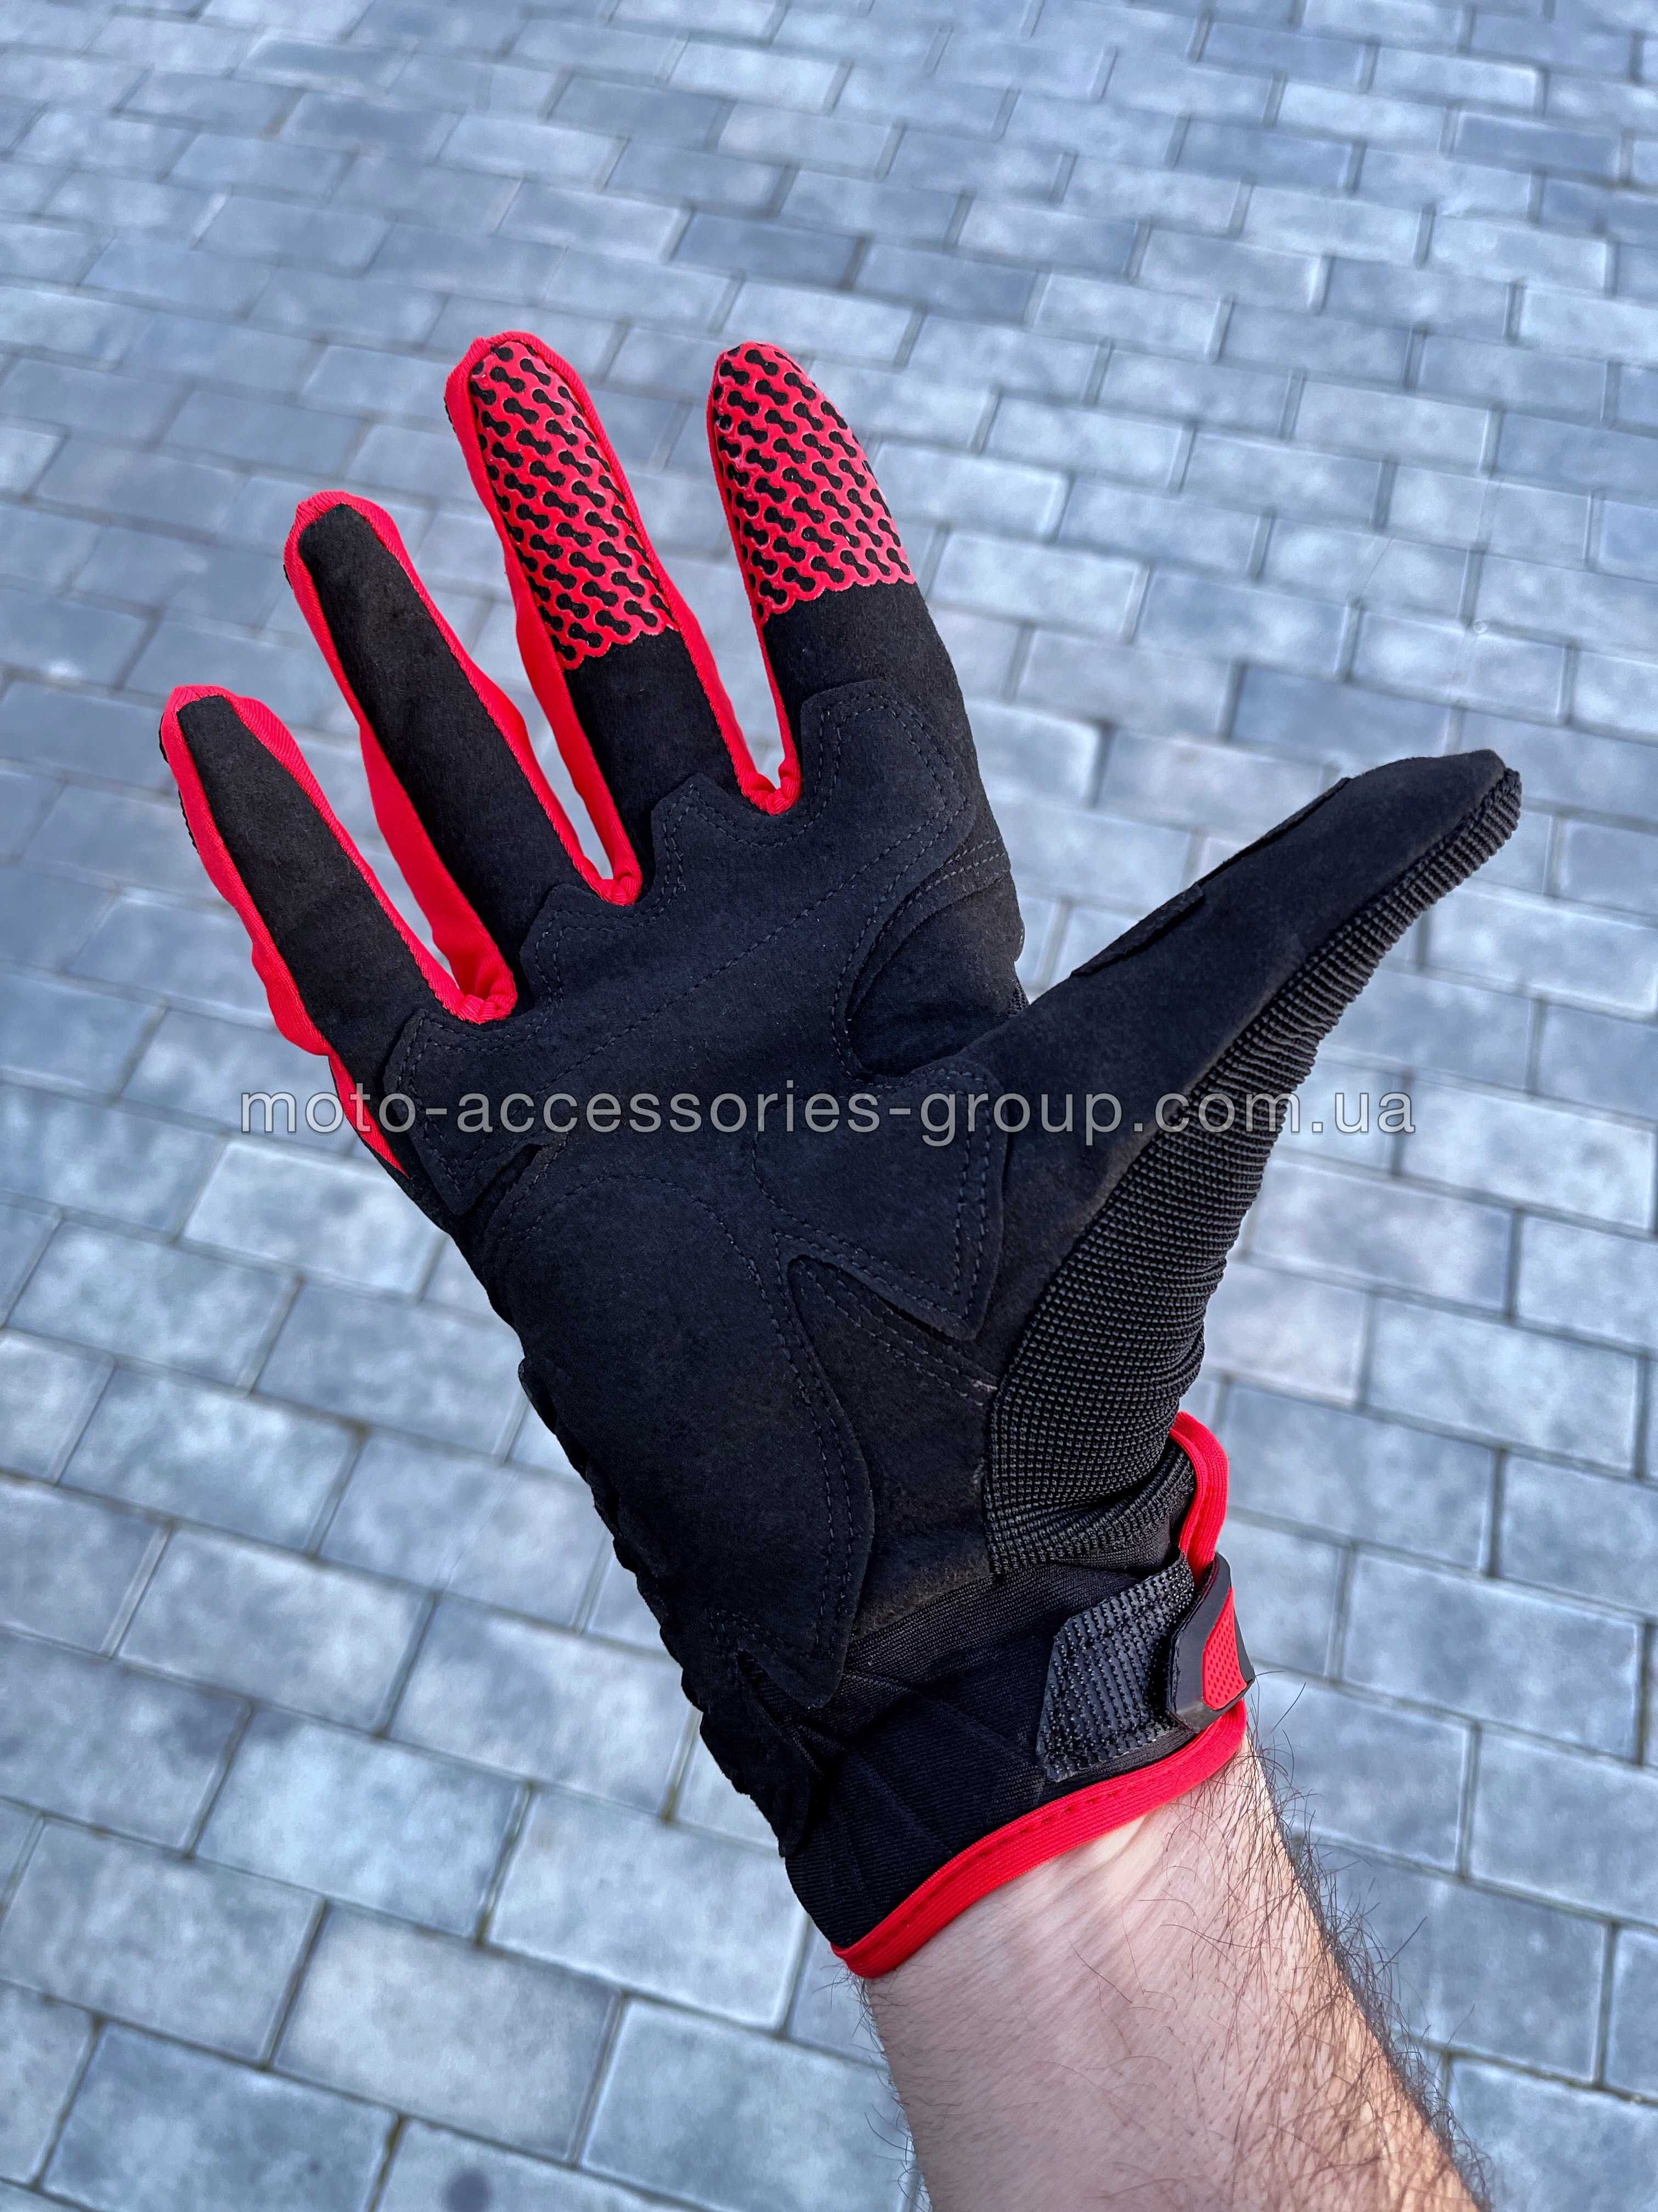 Мото рукавиці із захистом FOX Bomber мотоперчатки перчатки с защитой